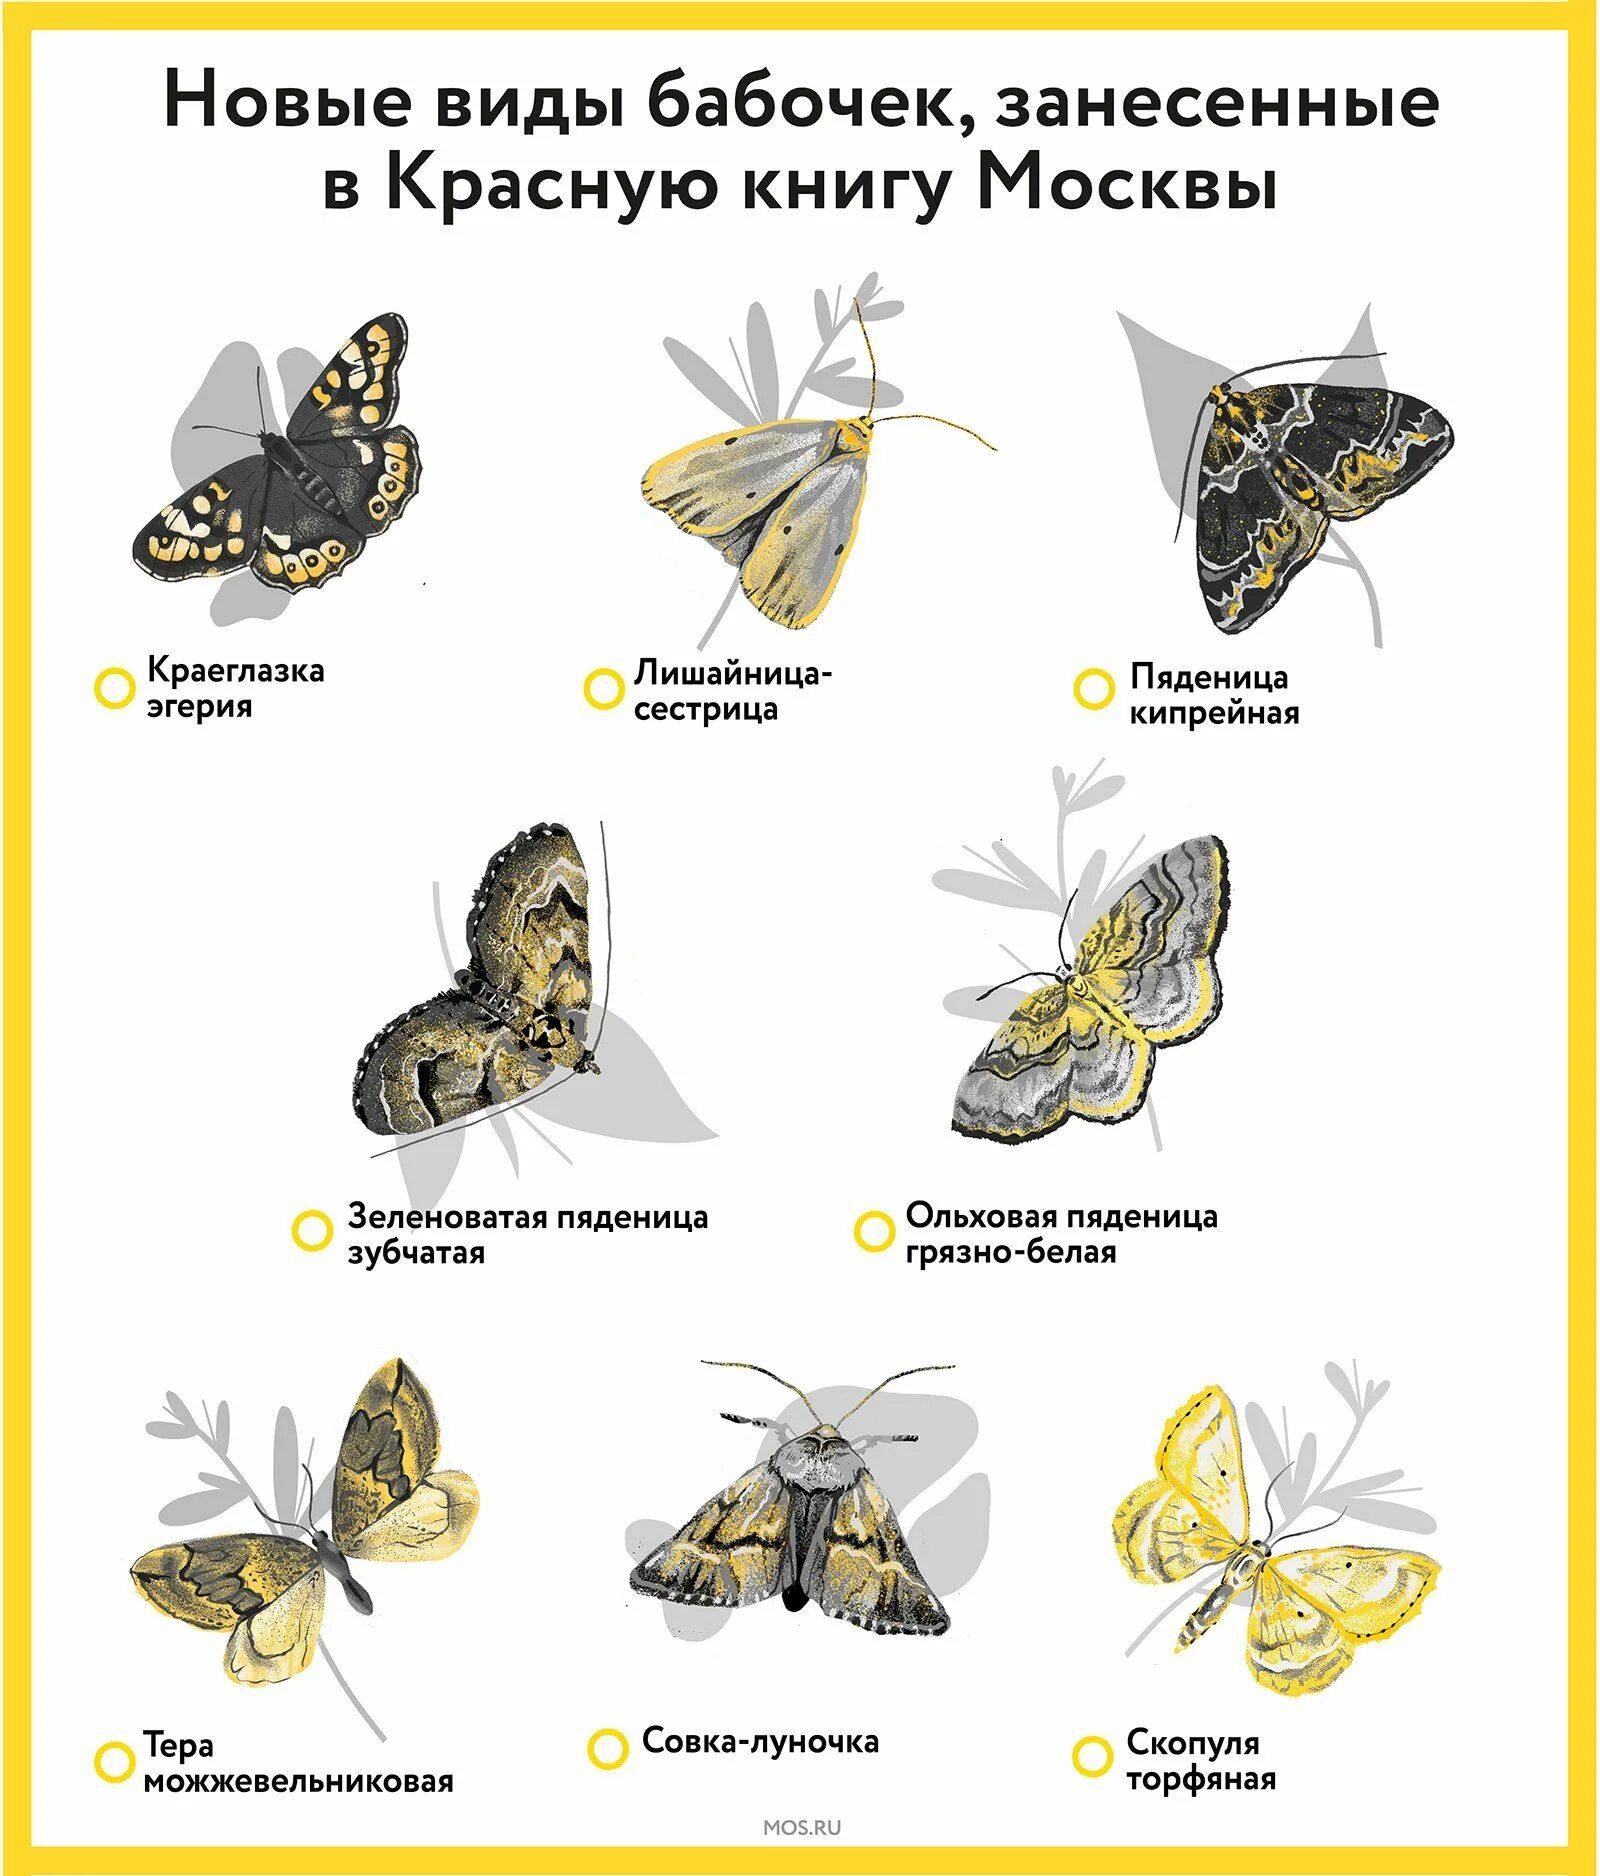 Бабочки занесенные в красную книгу. Название бабочек. Редкие виды бабочек. Бабочки занесенные в красную книгу России.